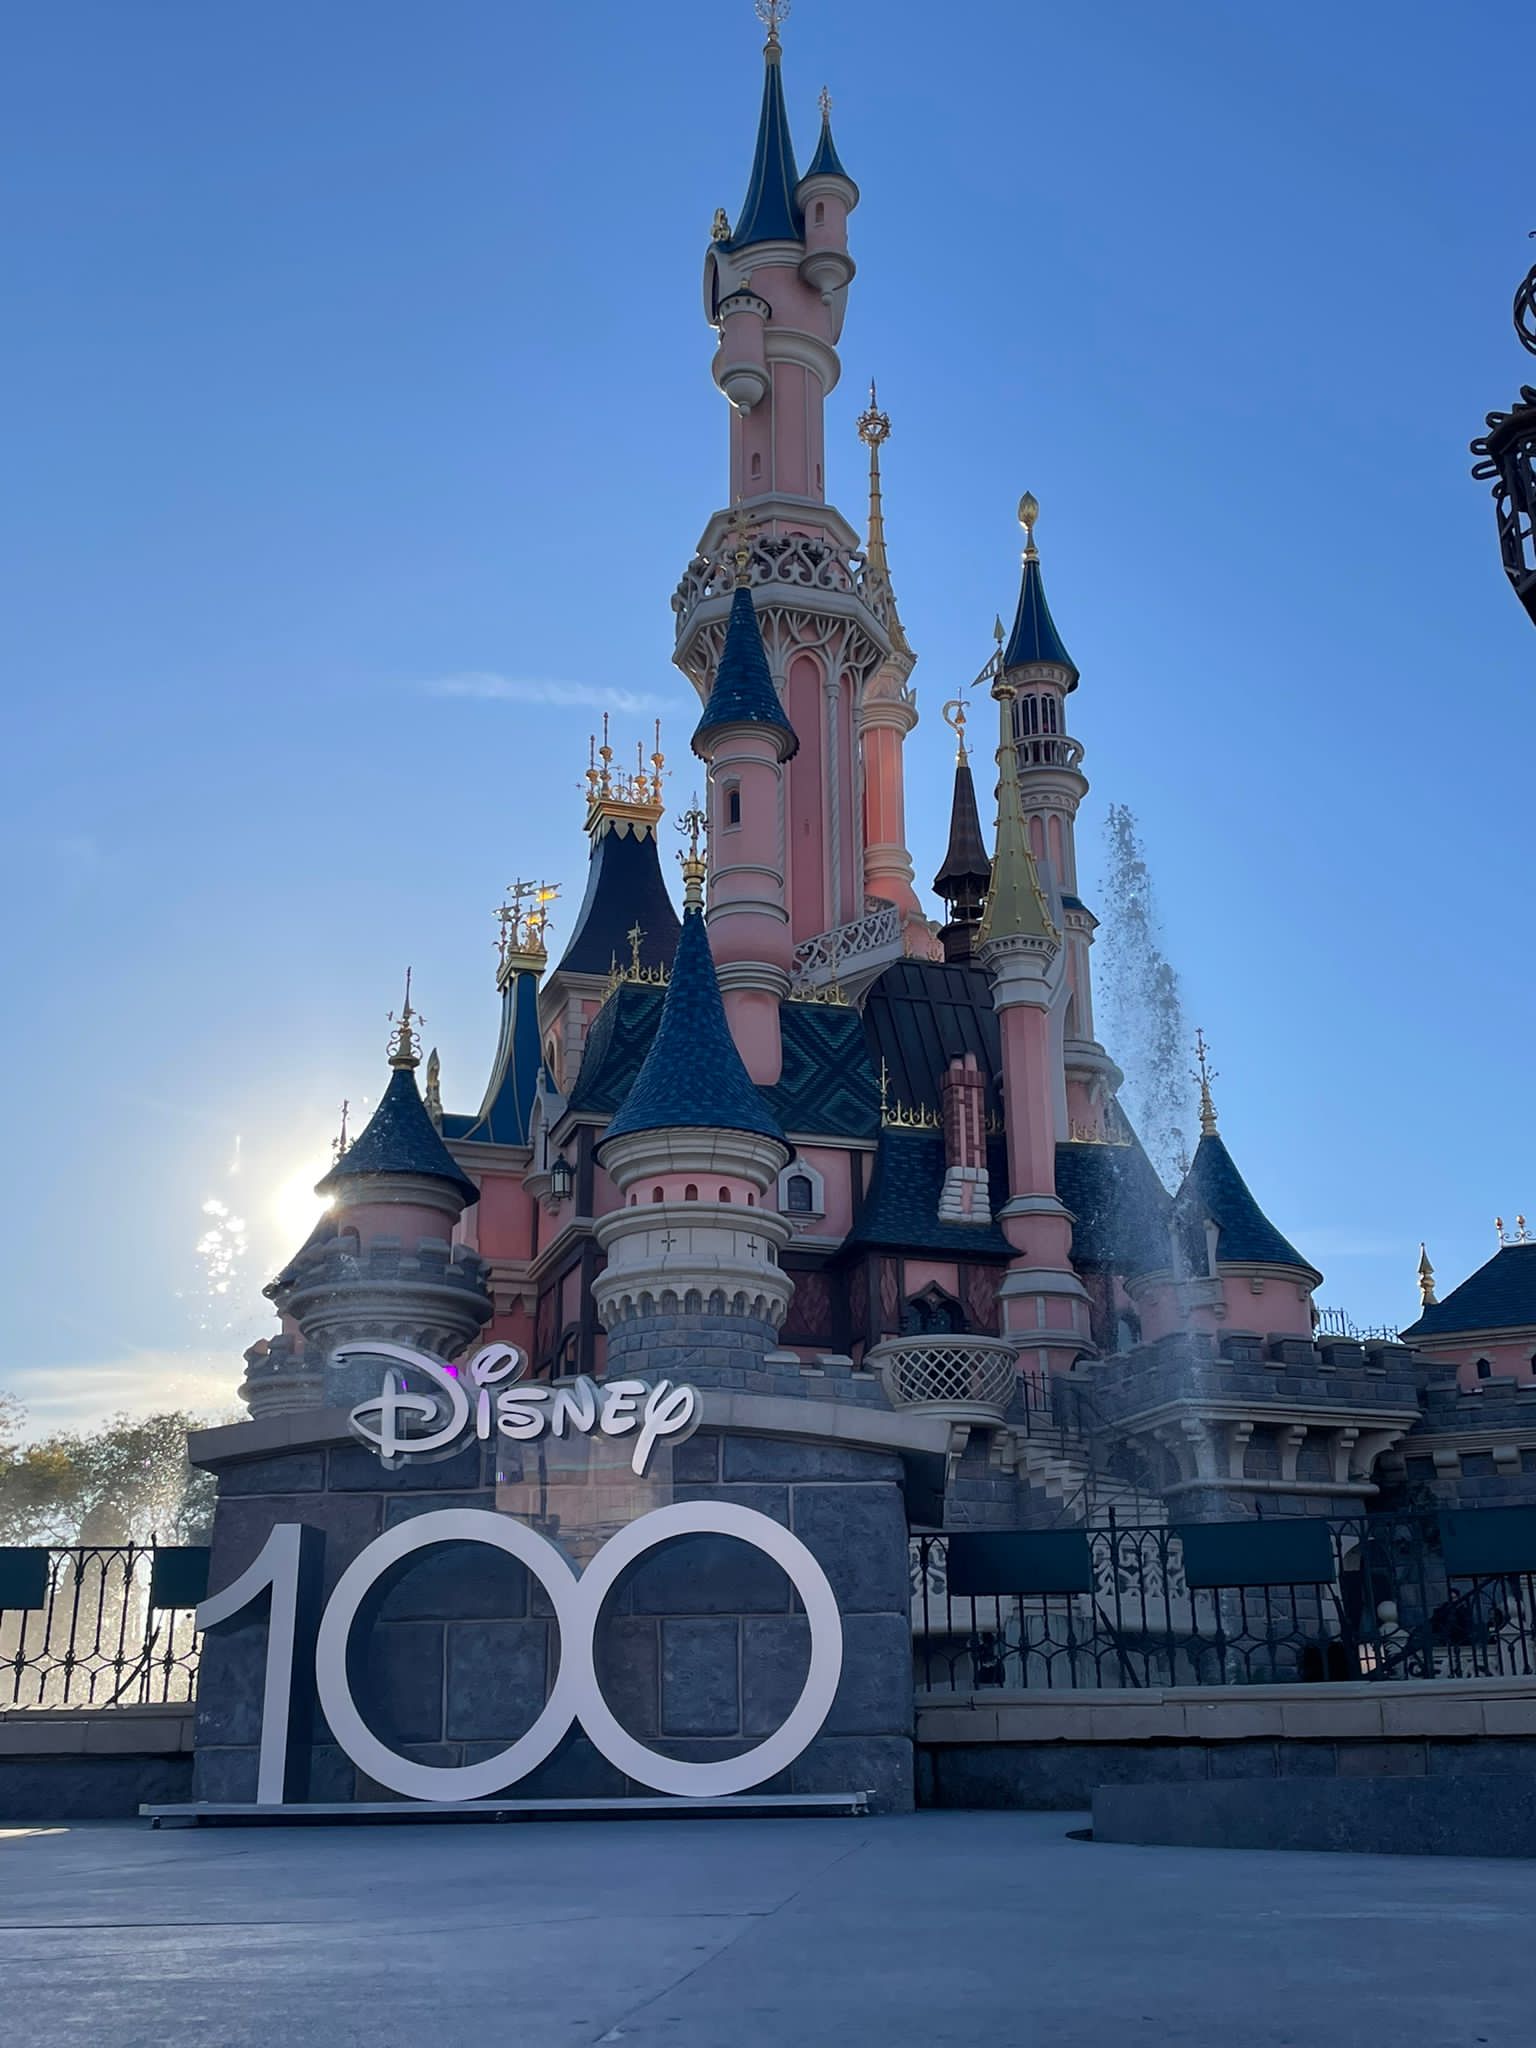 Disneyland Paris célèbre aujourd'hui les 100 ans de The Walt Disney Company  avec une cérémonie exceptionnelle réunissant 100 Personnages Disney devant  Le Château de la Belle au Bois Dormant ! • DisneylandParis News